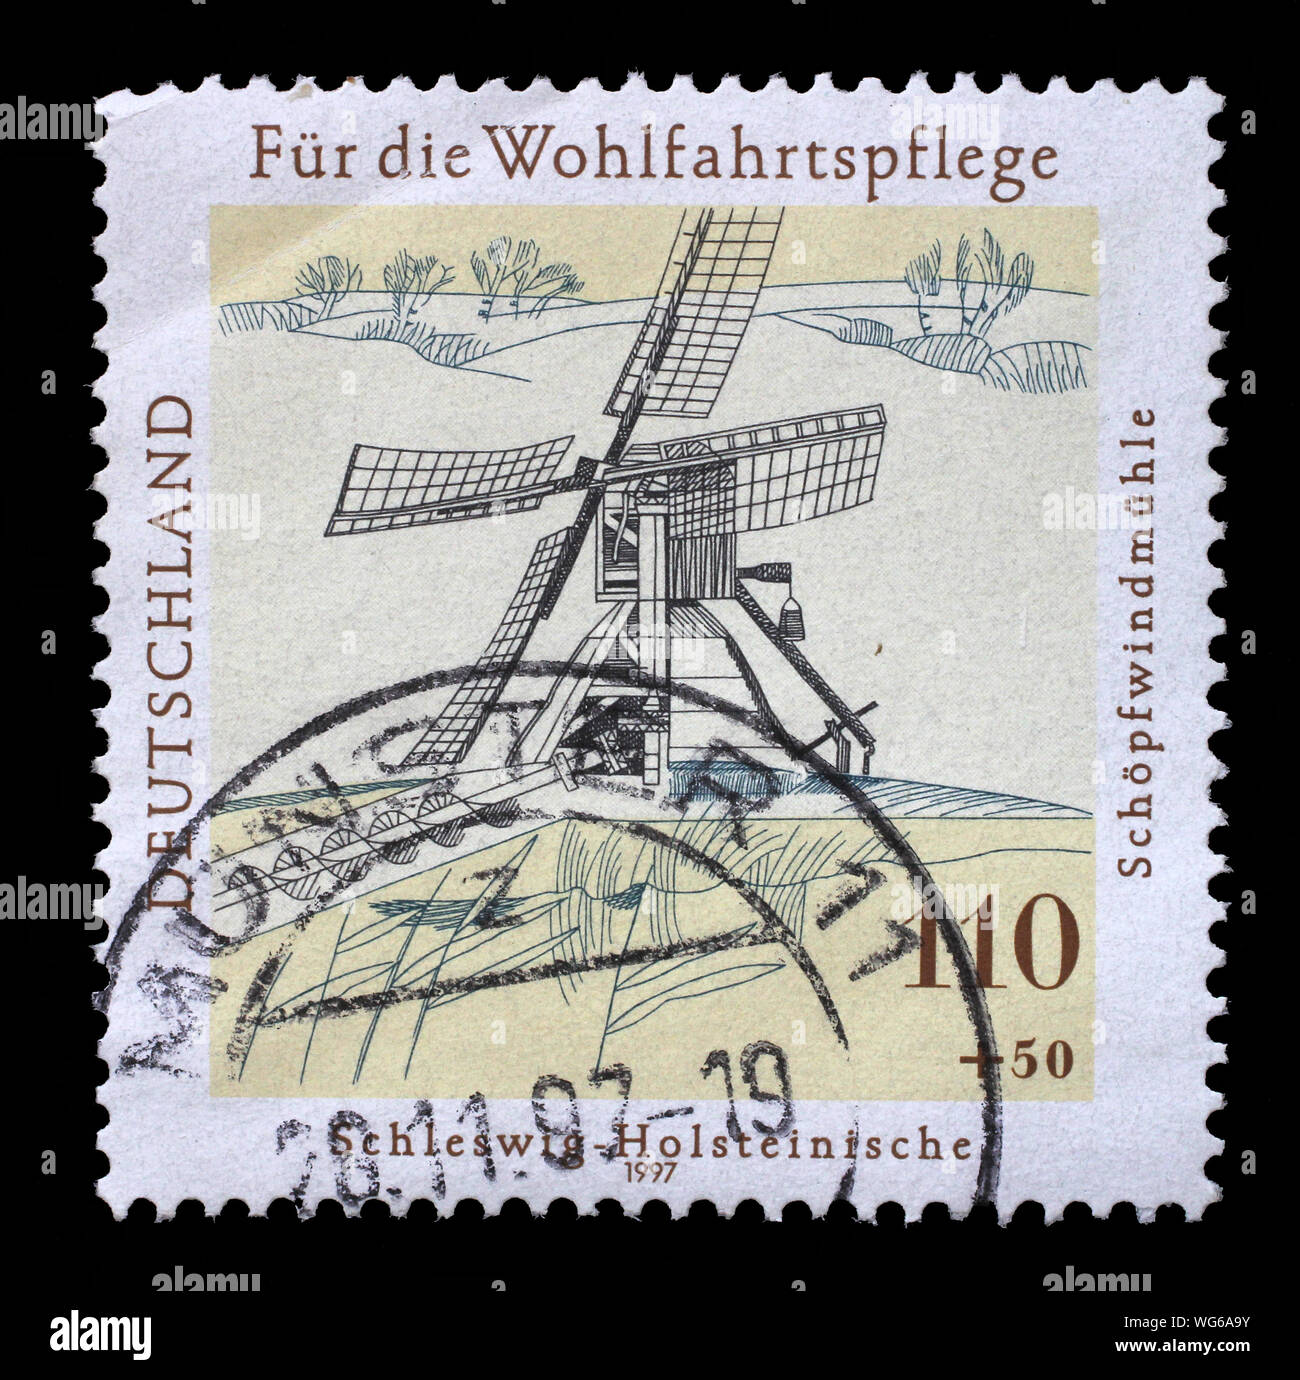 Timbro stampato in Germania mostra il benessere: Acqua e mulini a vento, circa 1997. Foto Stock